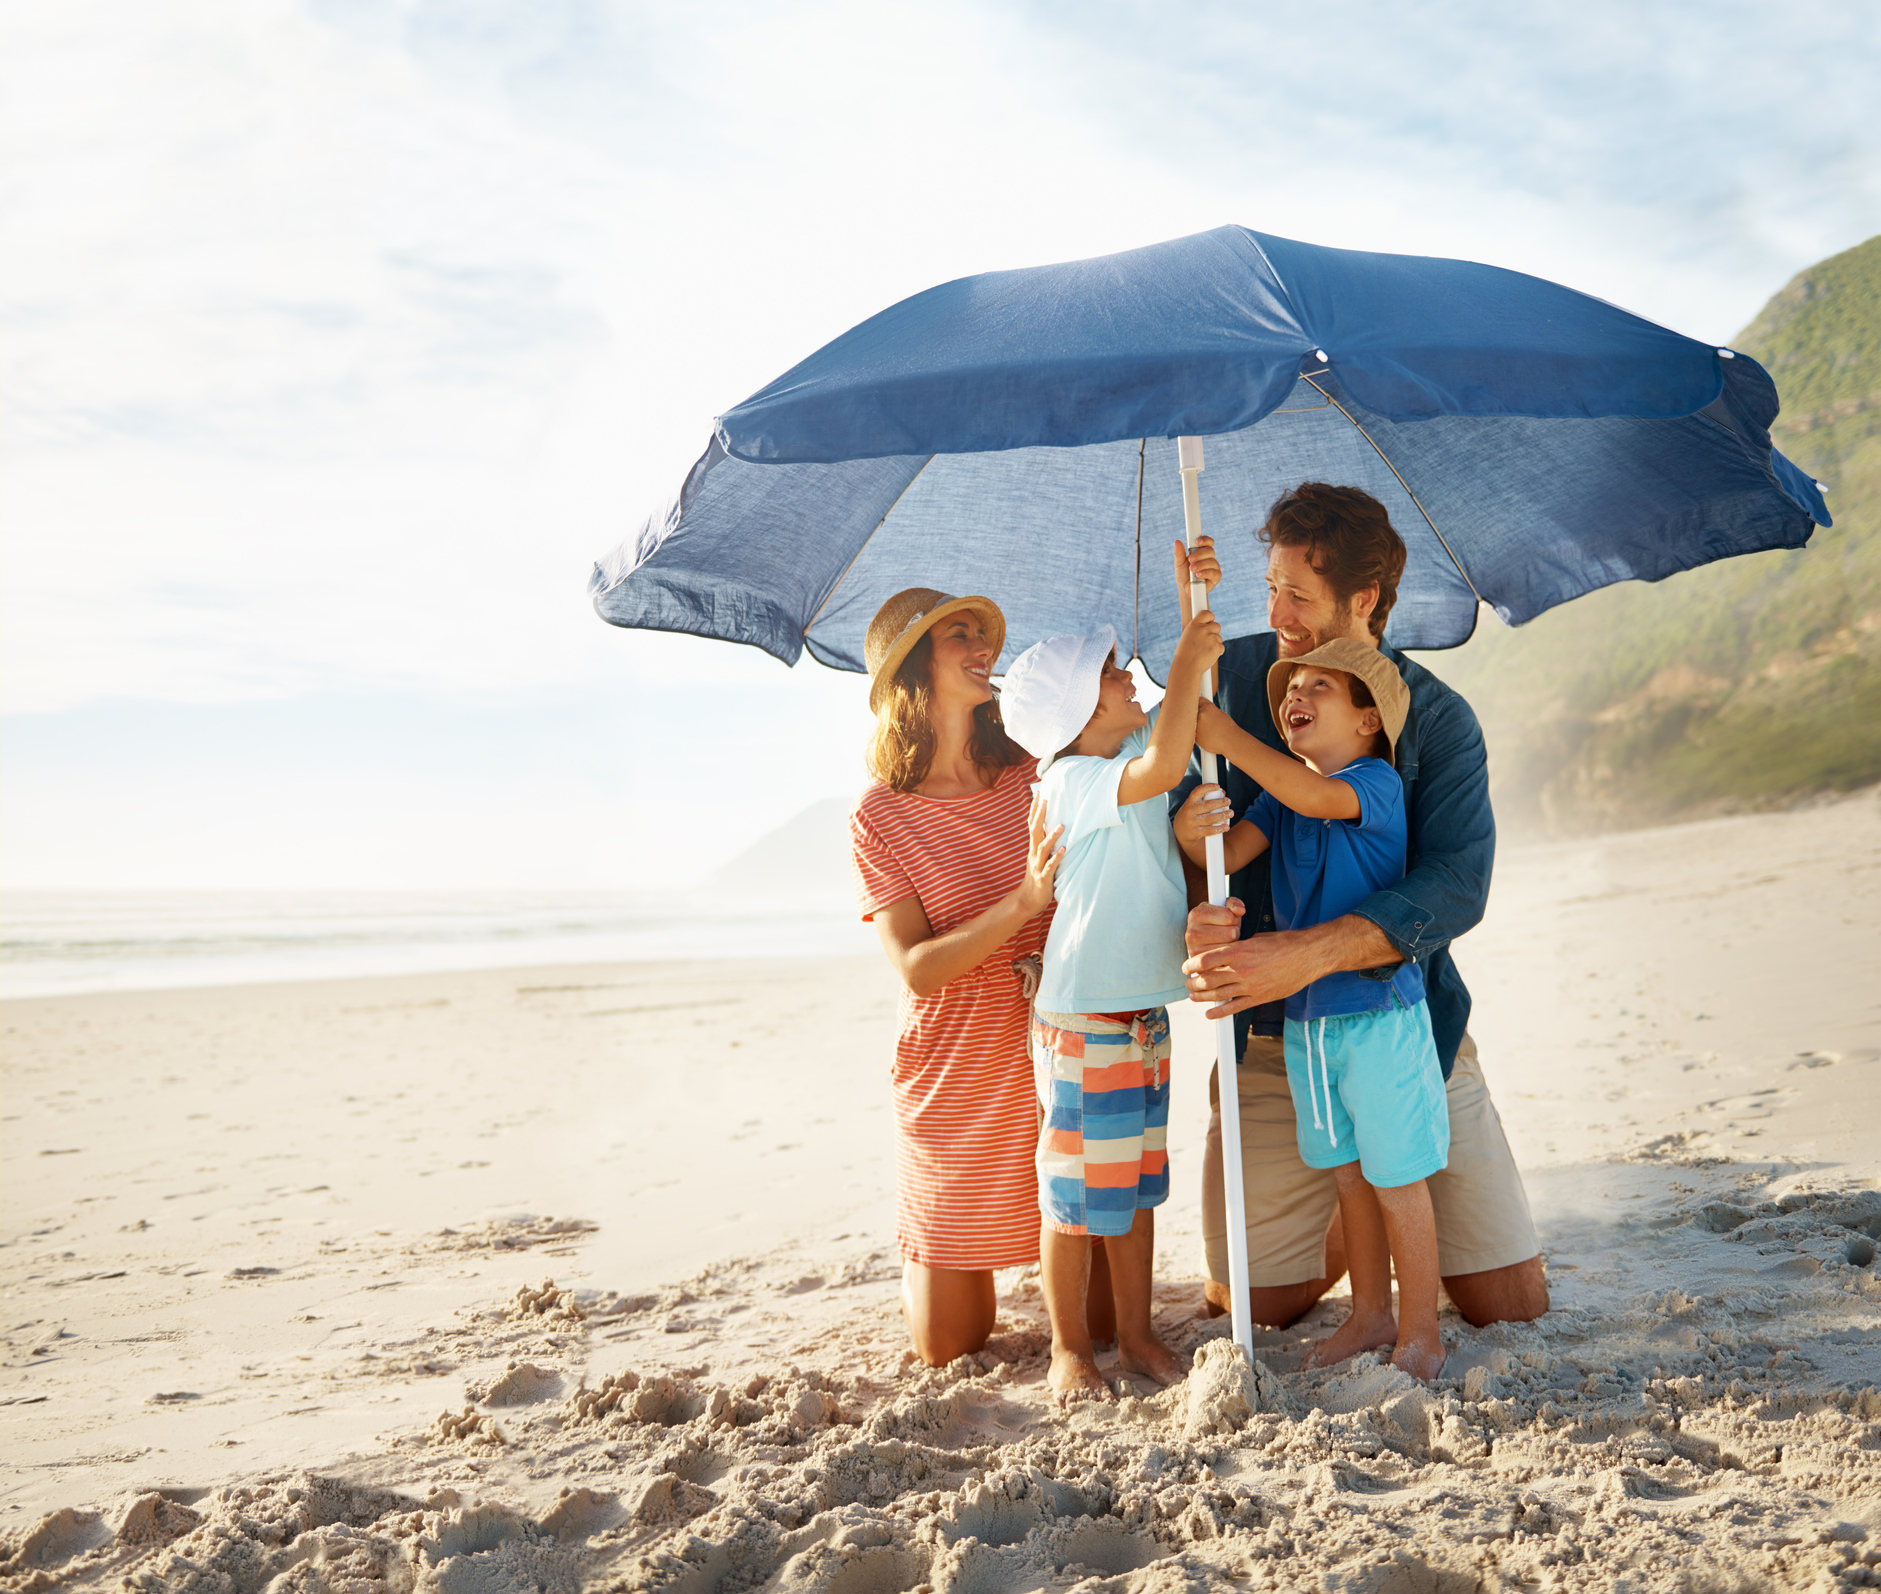 Haz esto y la sombrilla no saldrá volando verano en la playa | Business Insider España